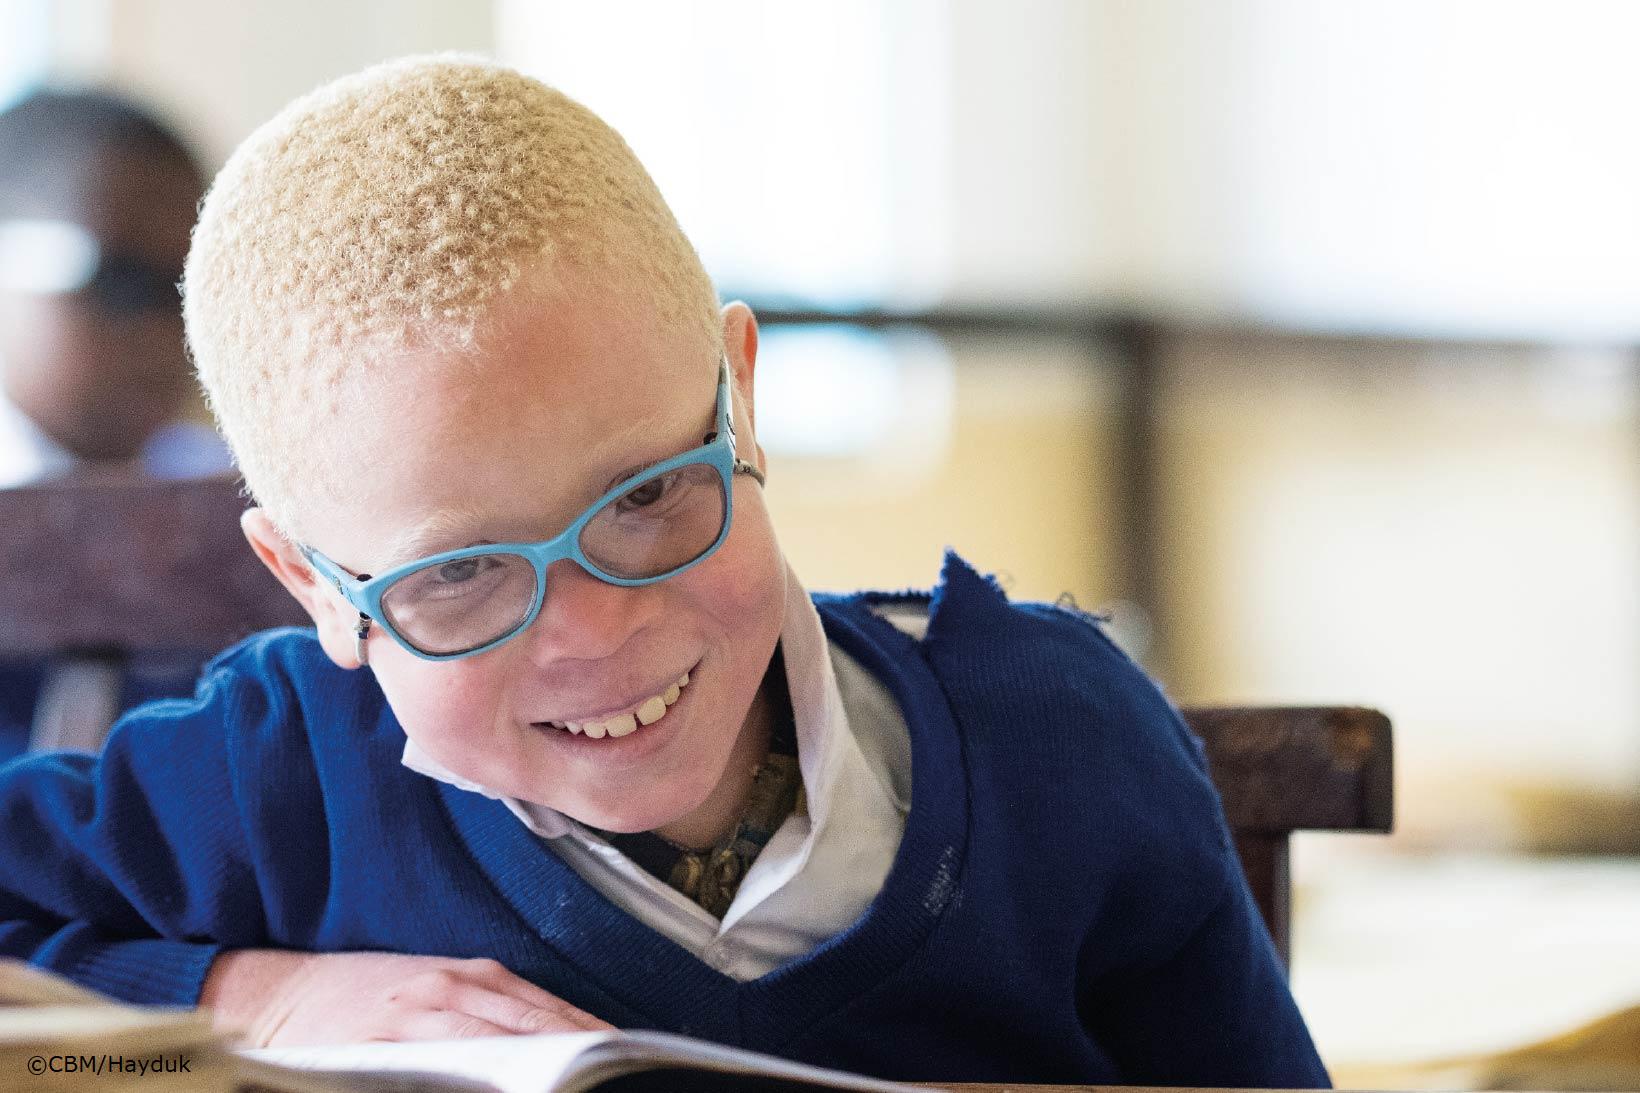 Un jeune garçon du Zimbabwe fixe l’objectif à travers ses lunettes. La lumière du soleil l’éblouit un peu à cause de la récente opération de la cataracte qu’il a subie.